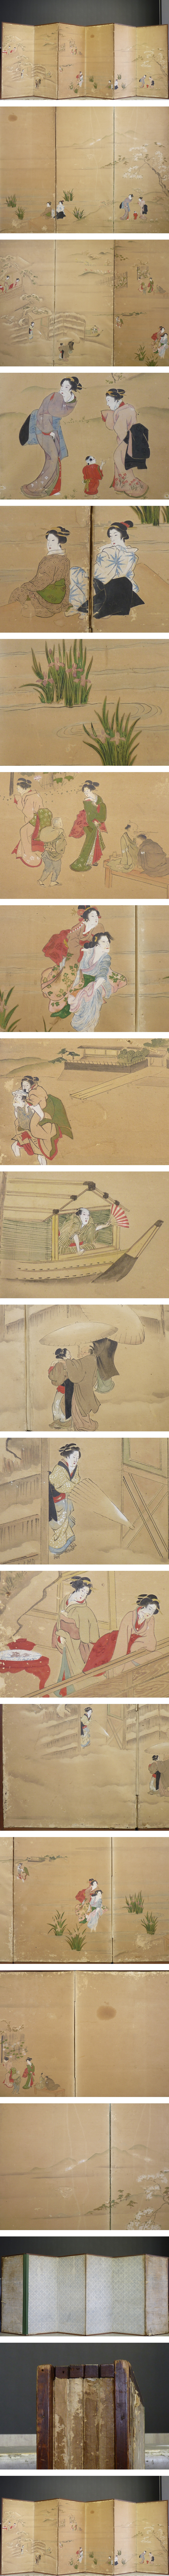 【在庫特価】四季 美人図 中屏風 高さ 約112㎝ 六曲半双 紙本肉筆 無落款 日本画 人物、菩薩